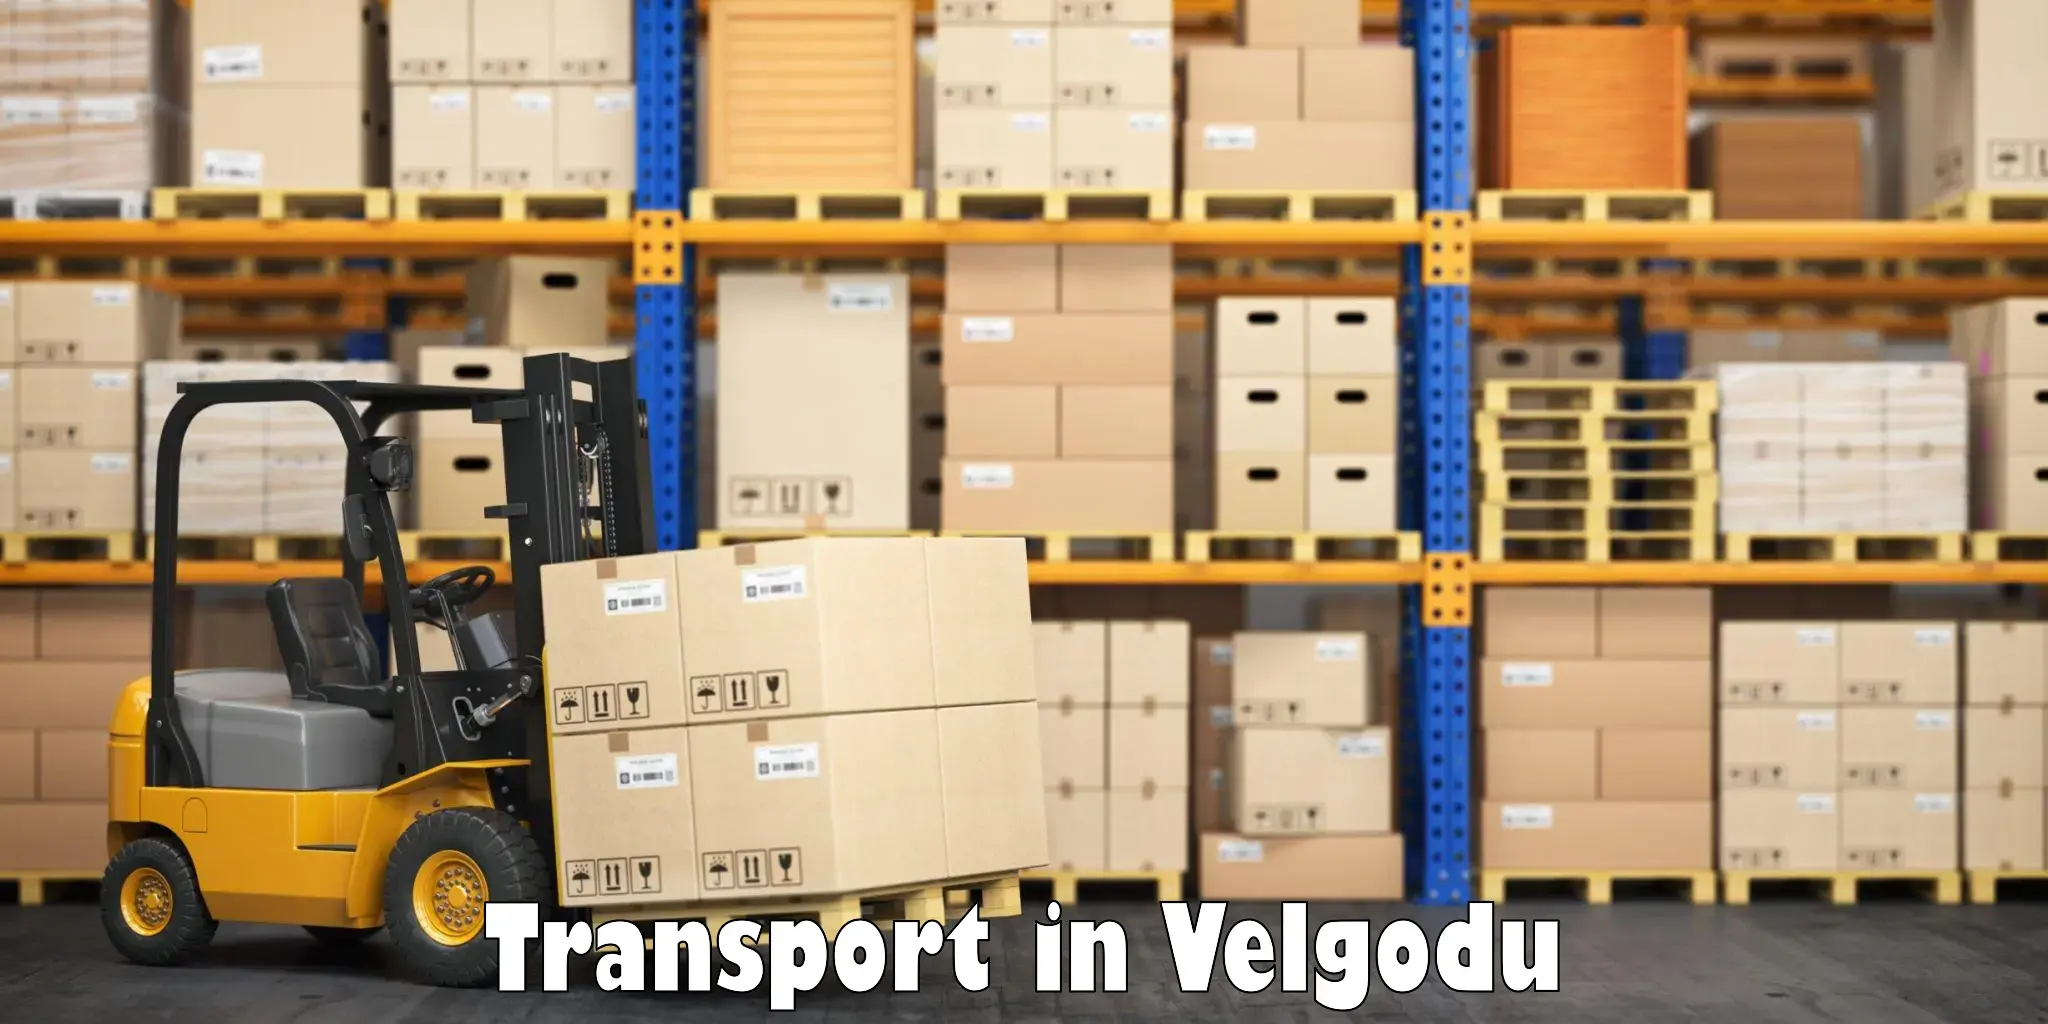 Daily transport service in Velgodu